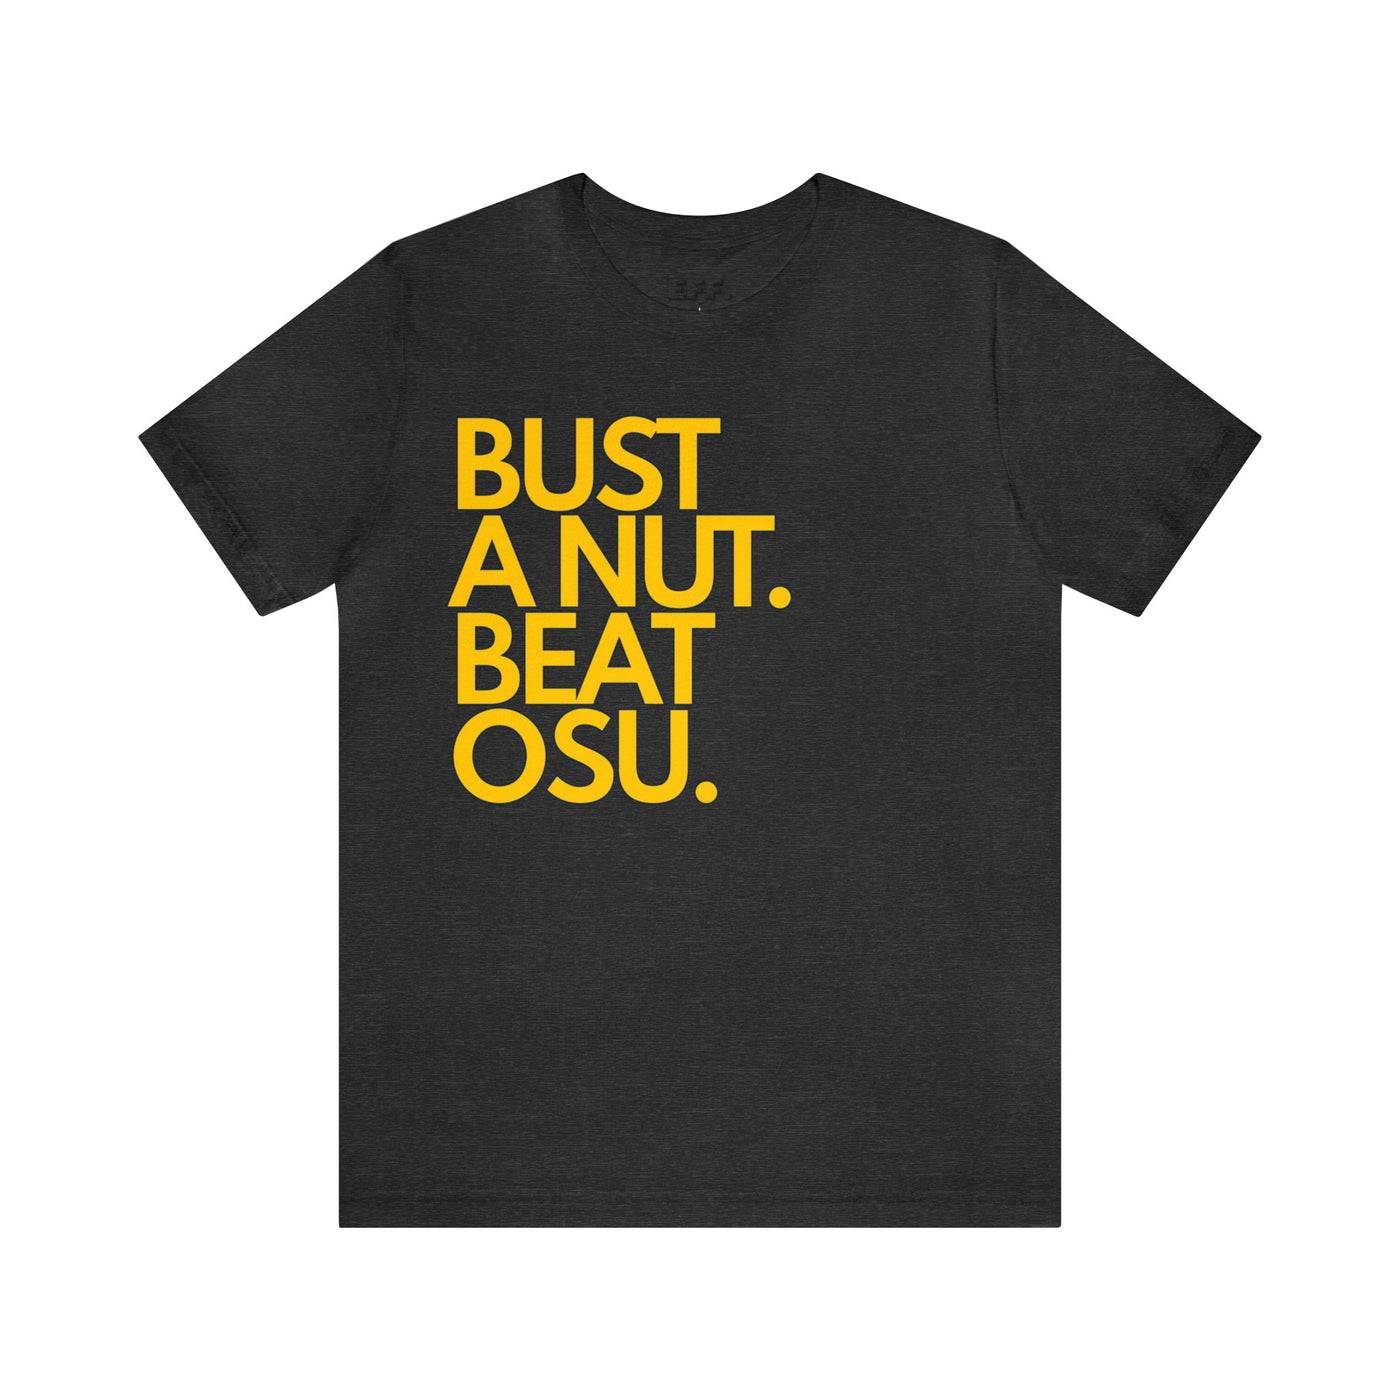 Bust A Nut. Beat OSU.